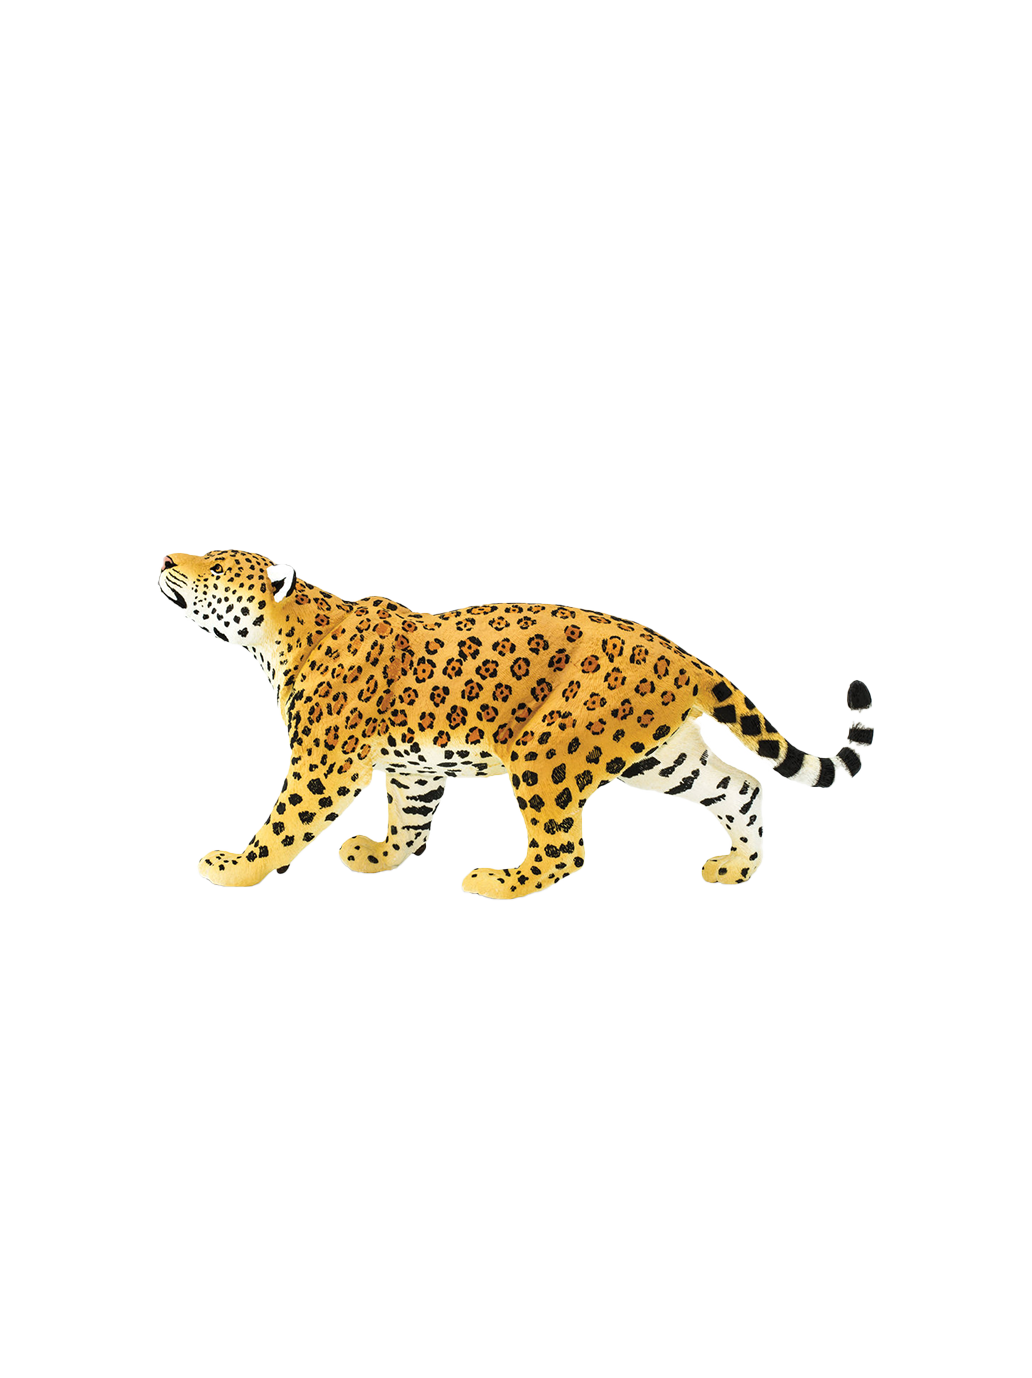 Une grande figurine de jaguar